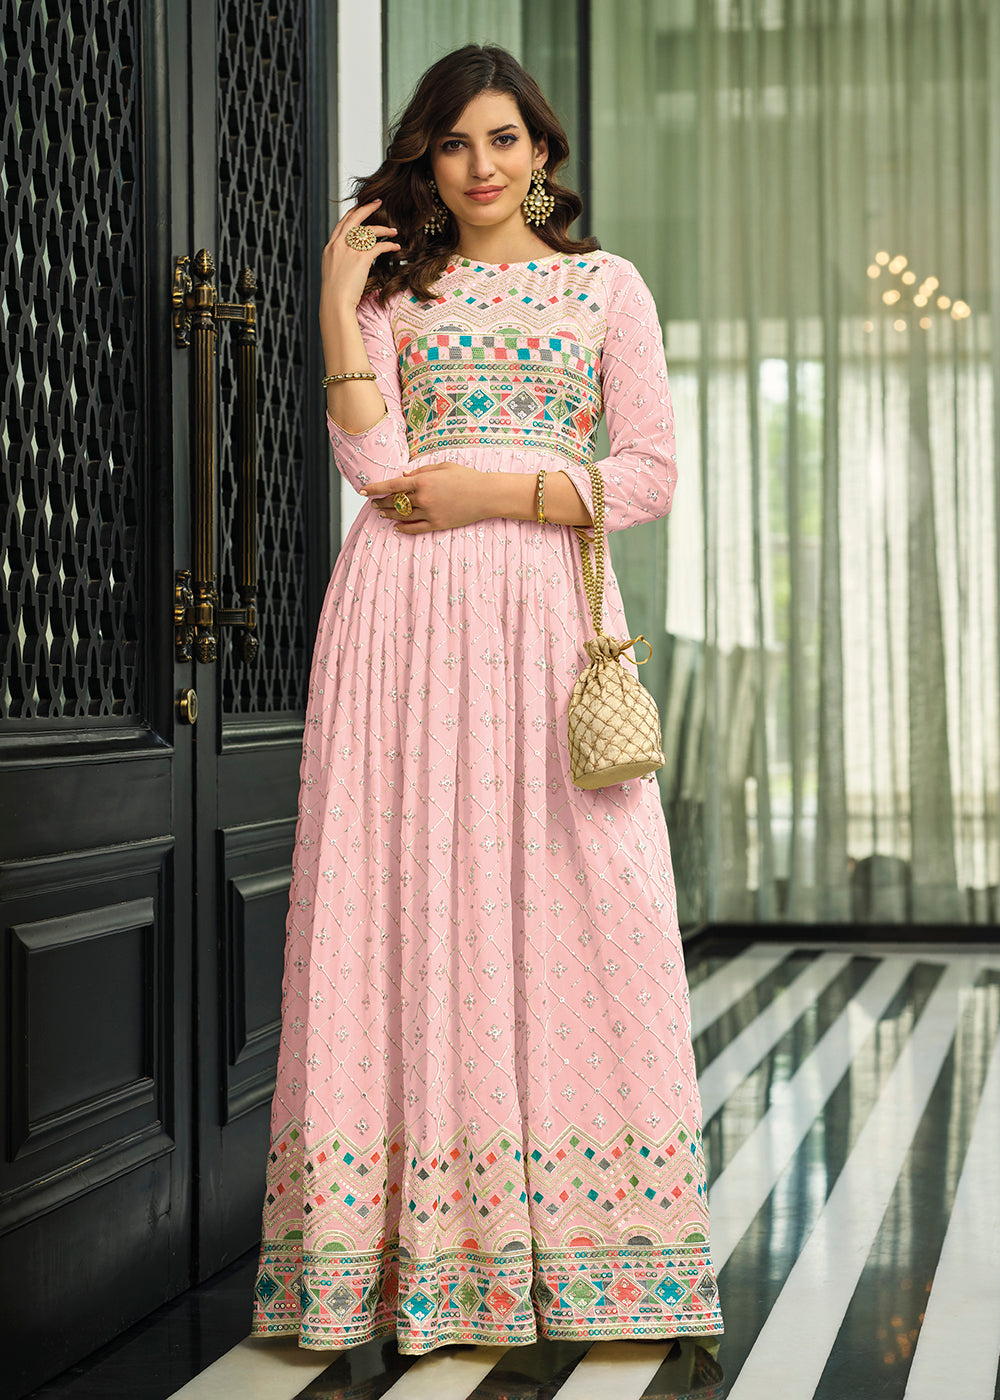 Shop Now Lime Soft Pink Georgette Embellished Anarkali Suit Online at Empress Clothing in USA.